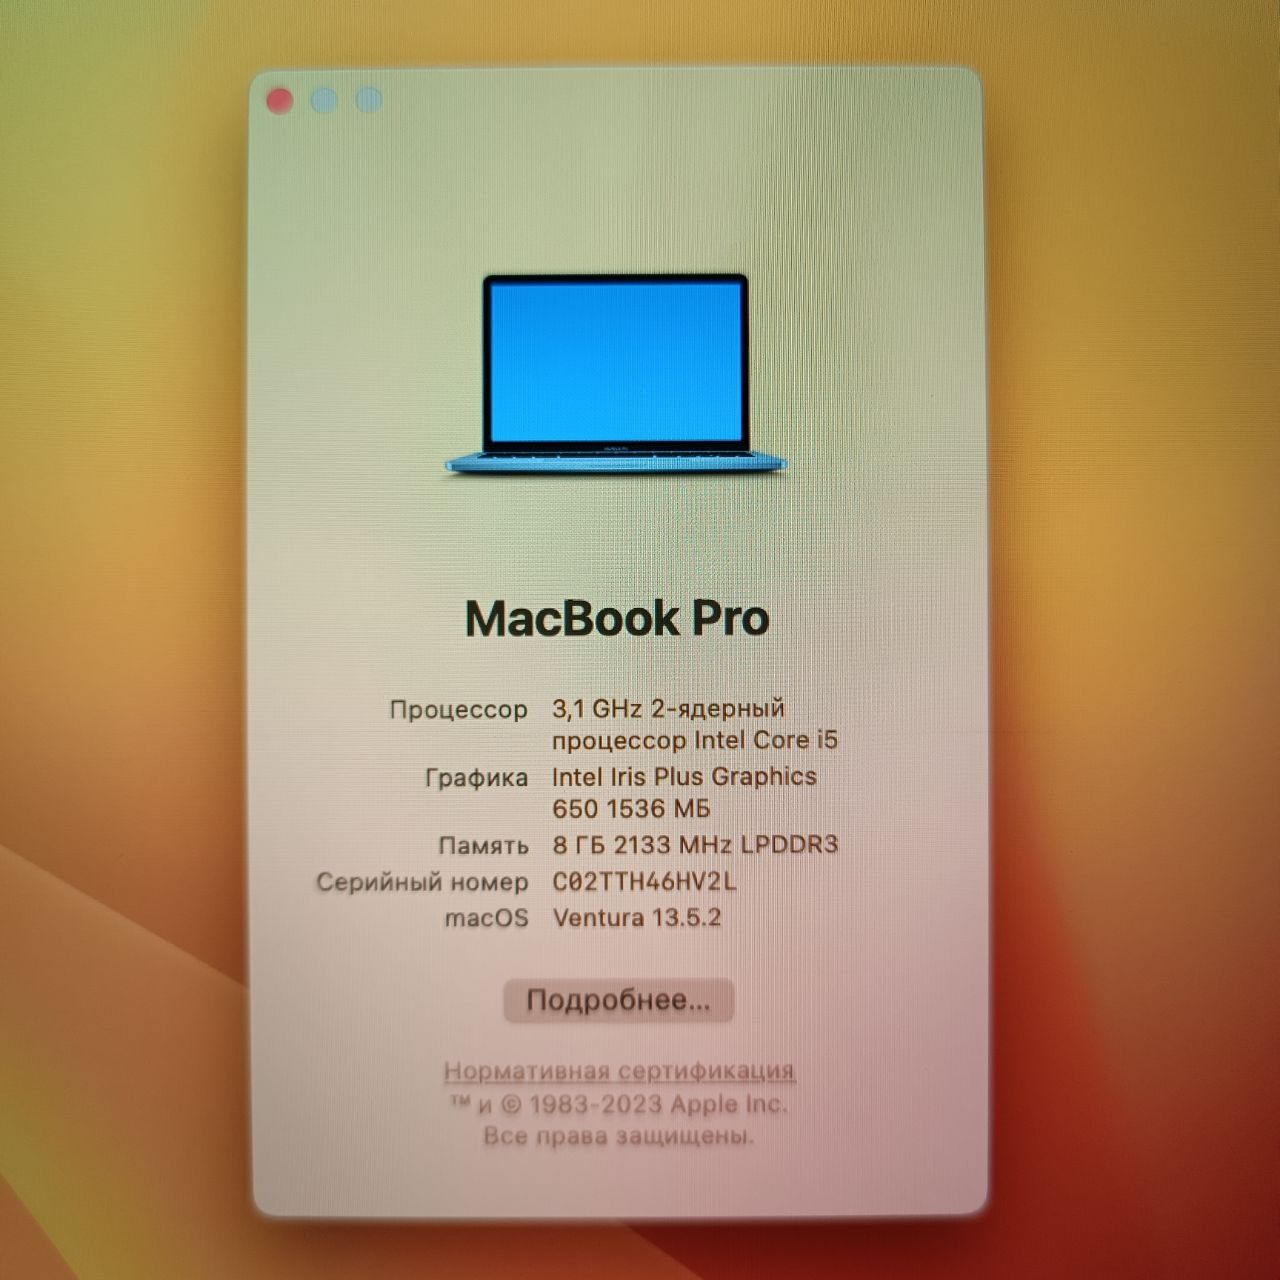 Macbook pro 2017 14 inch